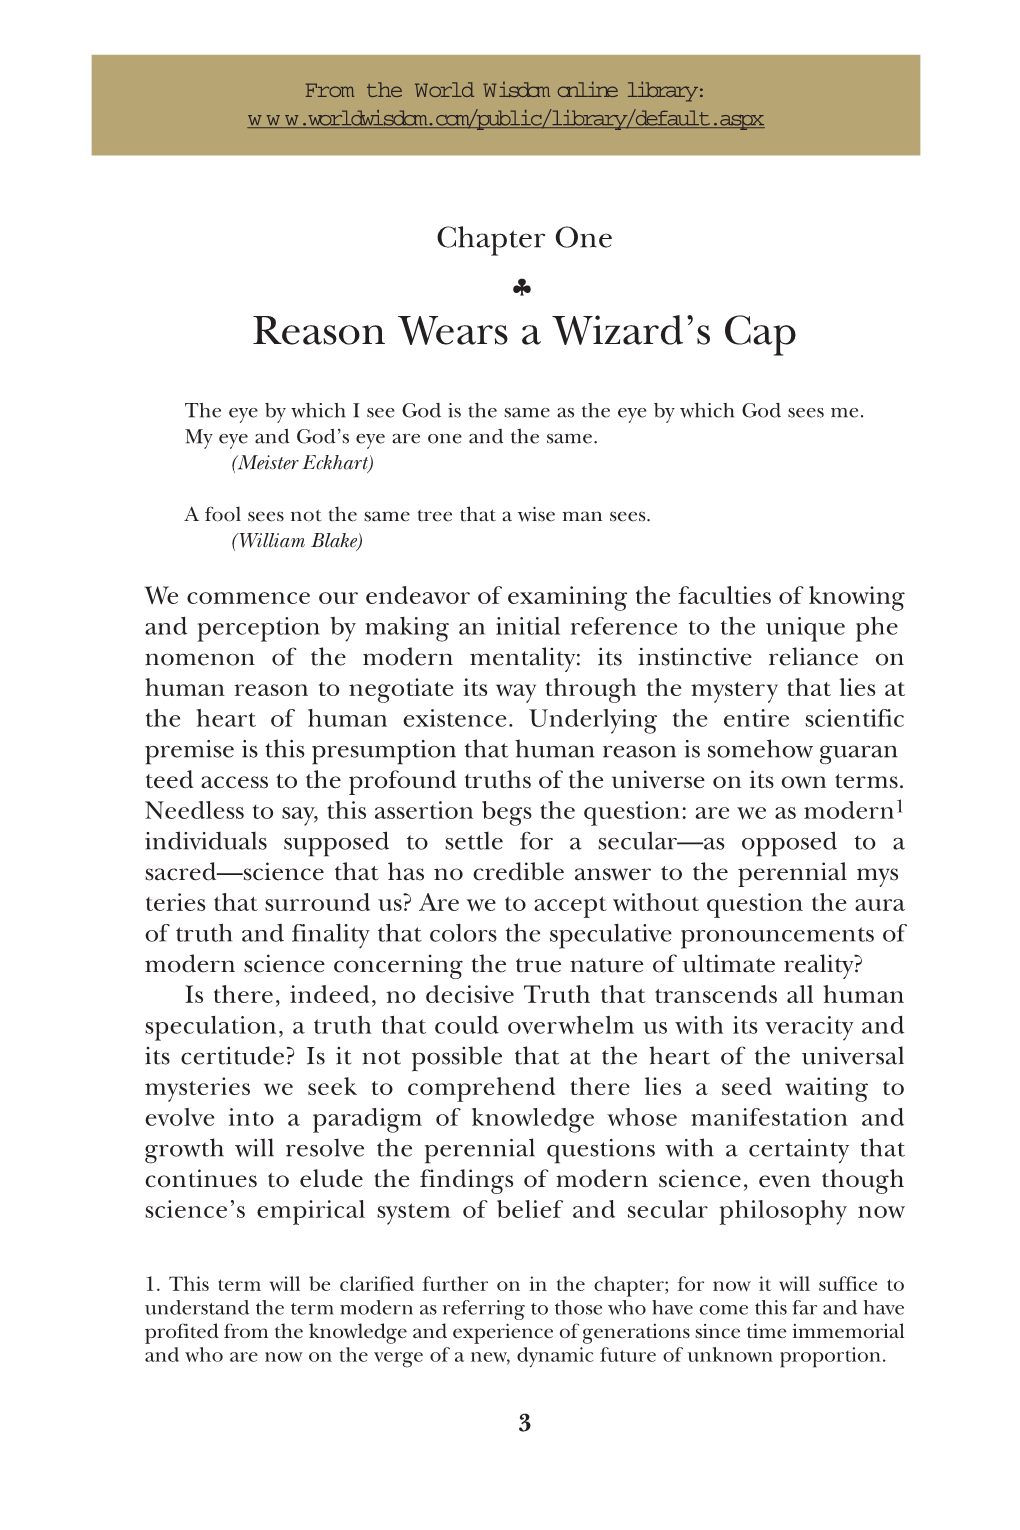 Reason Wears a Wizard's